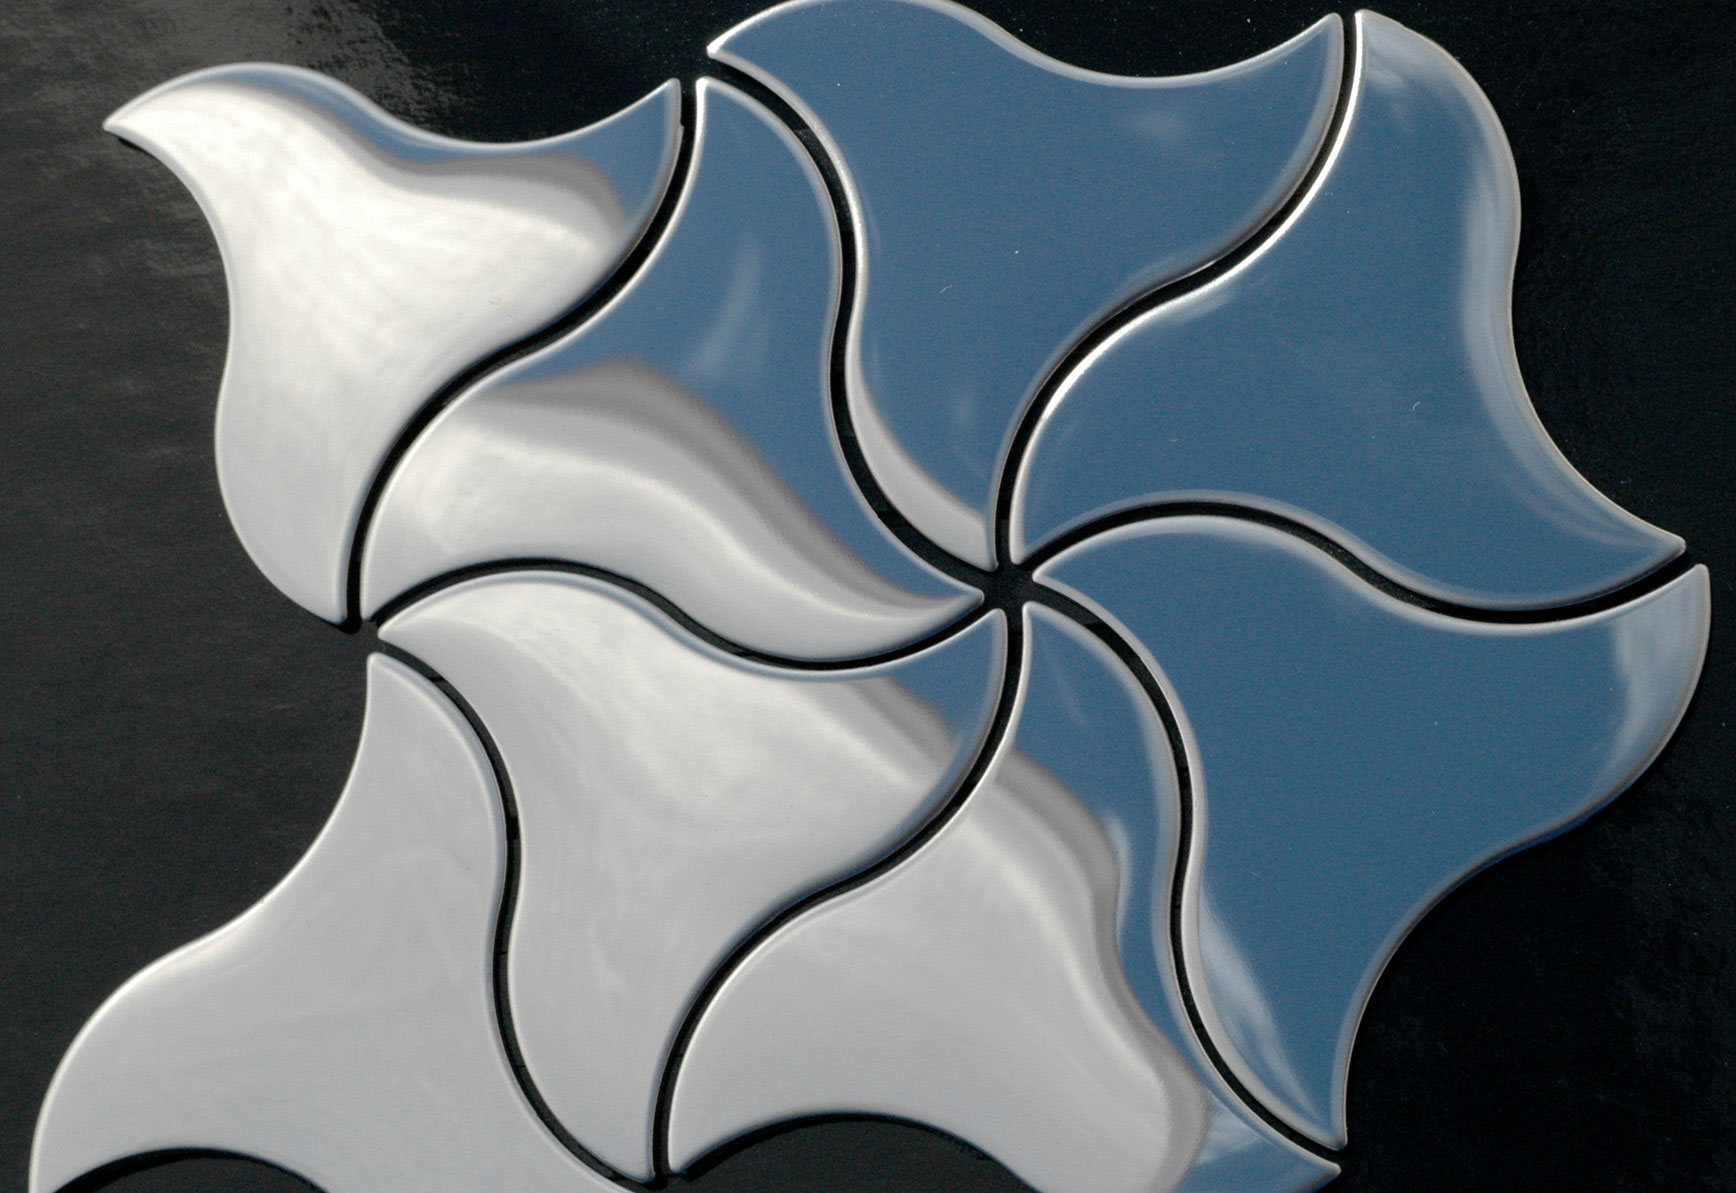 NINJA Stainless Steel Mirror Tiles